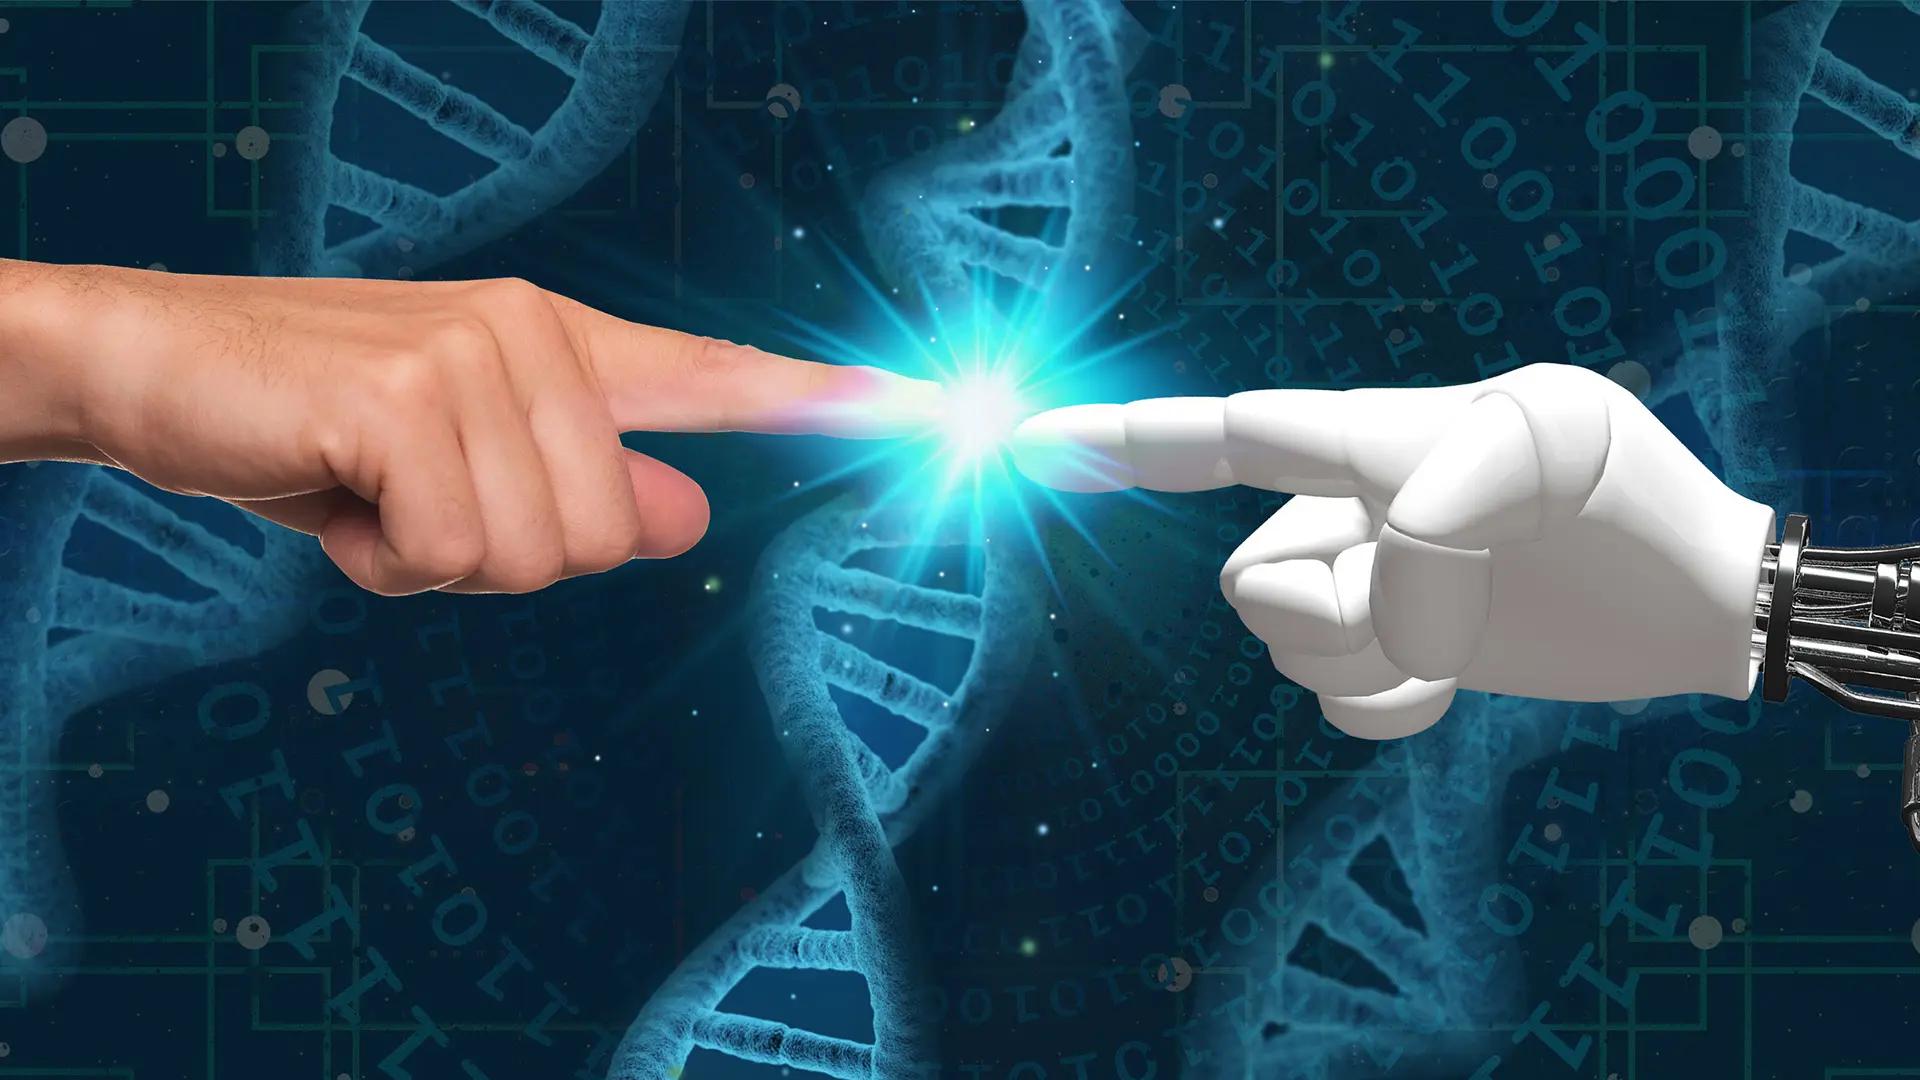 Grafisk illustration över en människohand och en robothand som rör varandra, med en DNA molekyl i bakgrunden